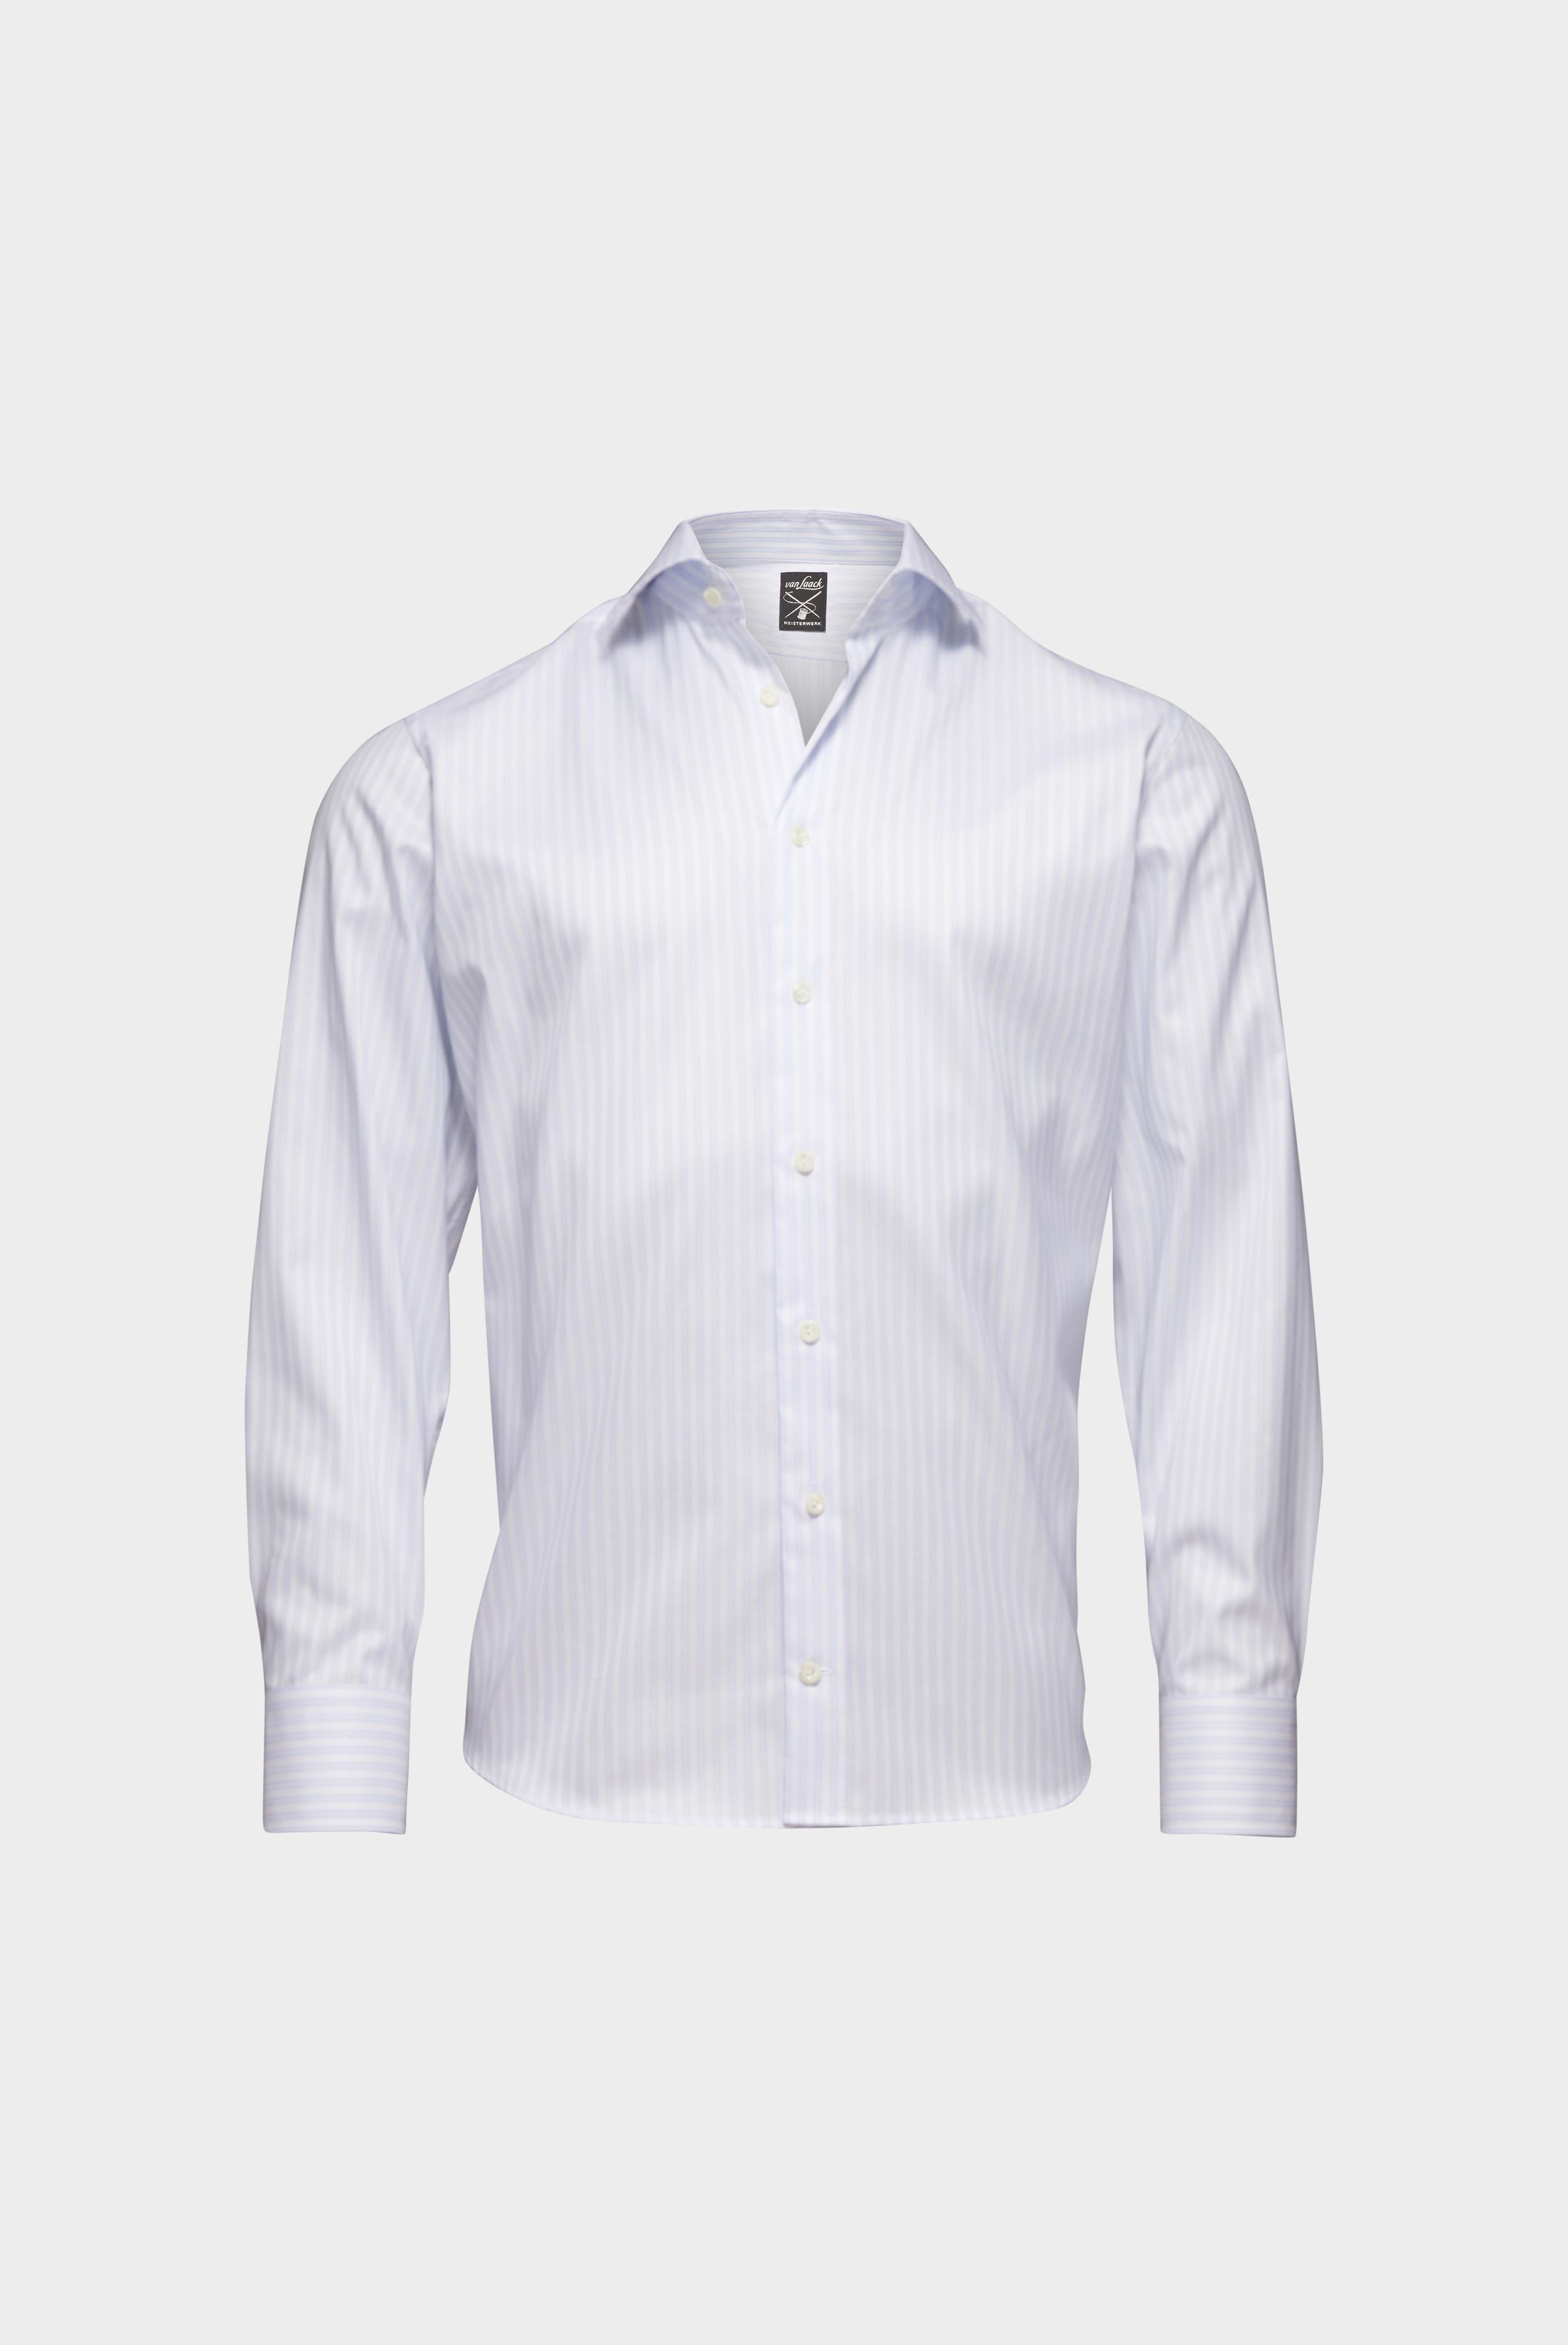 Bügelleichte Hemden+Bügelfreies Hemd mit Streifen Tailor Fit+20.2020.BQ.161106.007.45